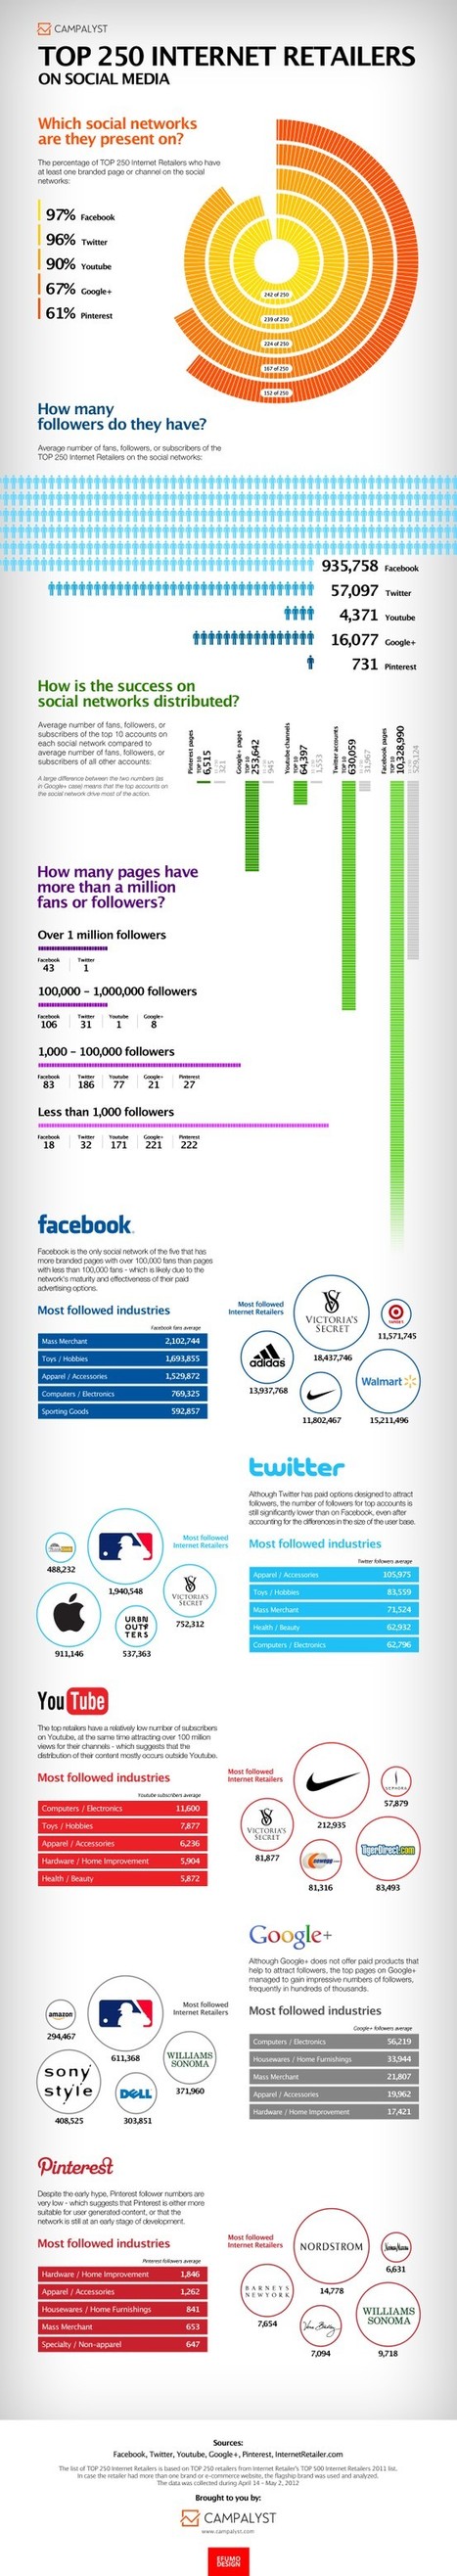 The Top 250 Internet Retailers on Social Media | #TRIC para los de LETRAS | Scoop.it